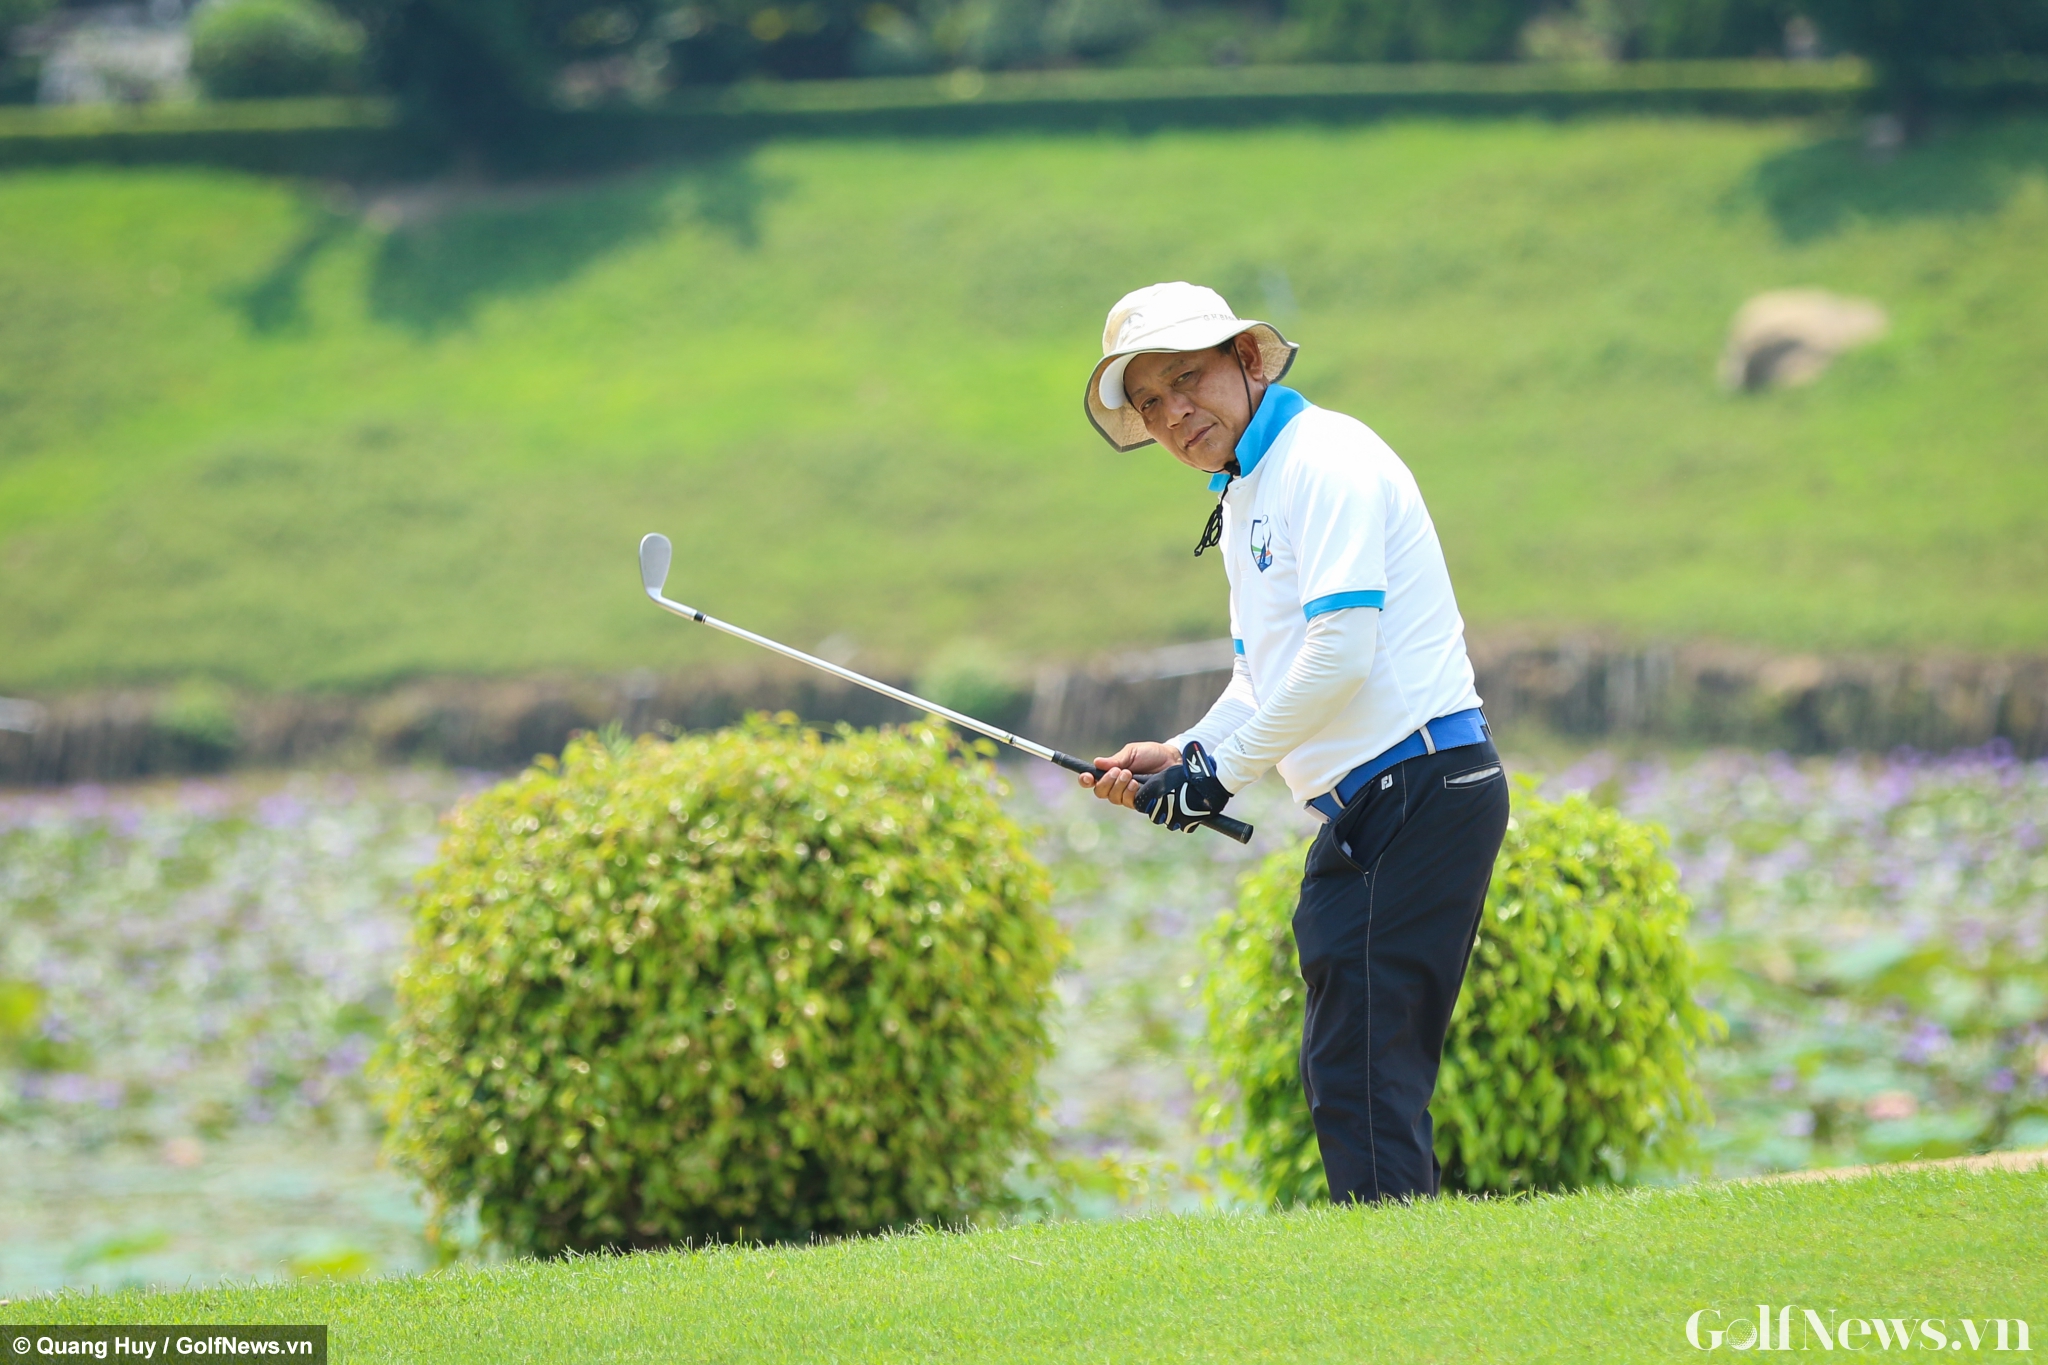 Chùm ảnh: Những hình ảnh ấn tượng tại Giải Golf CLB HIO Mở rộng Lần 3 - Tranh cúp Docus Haraken